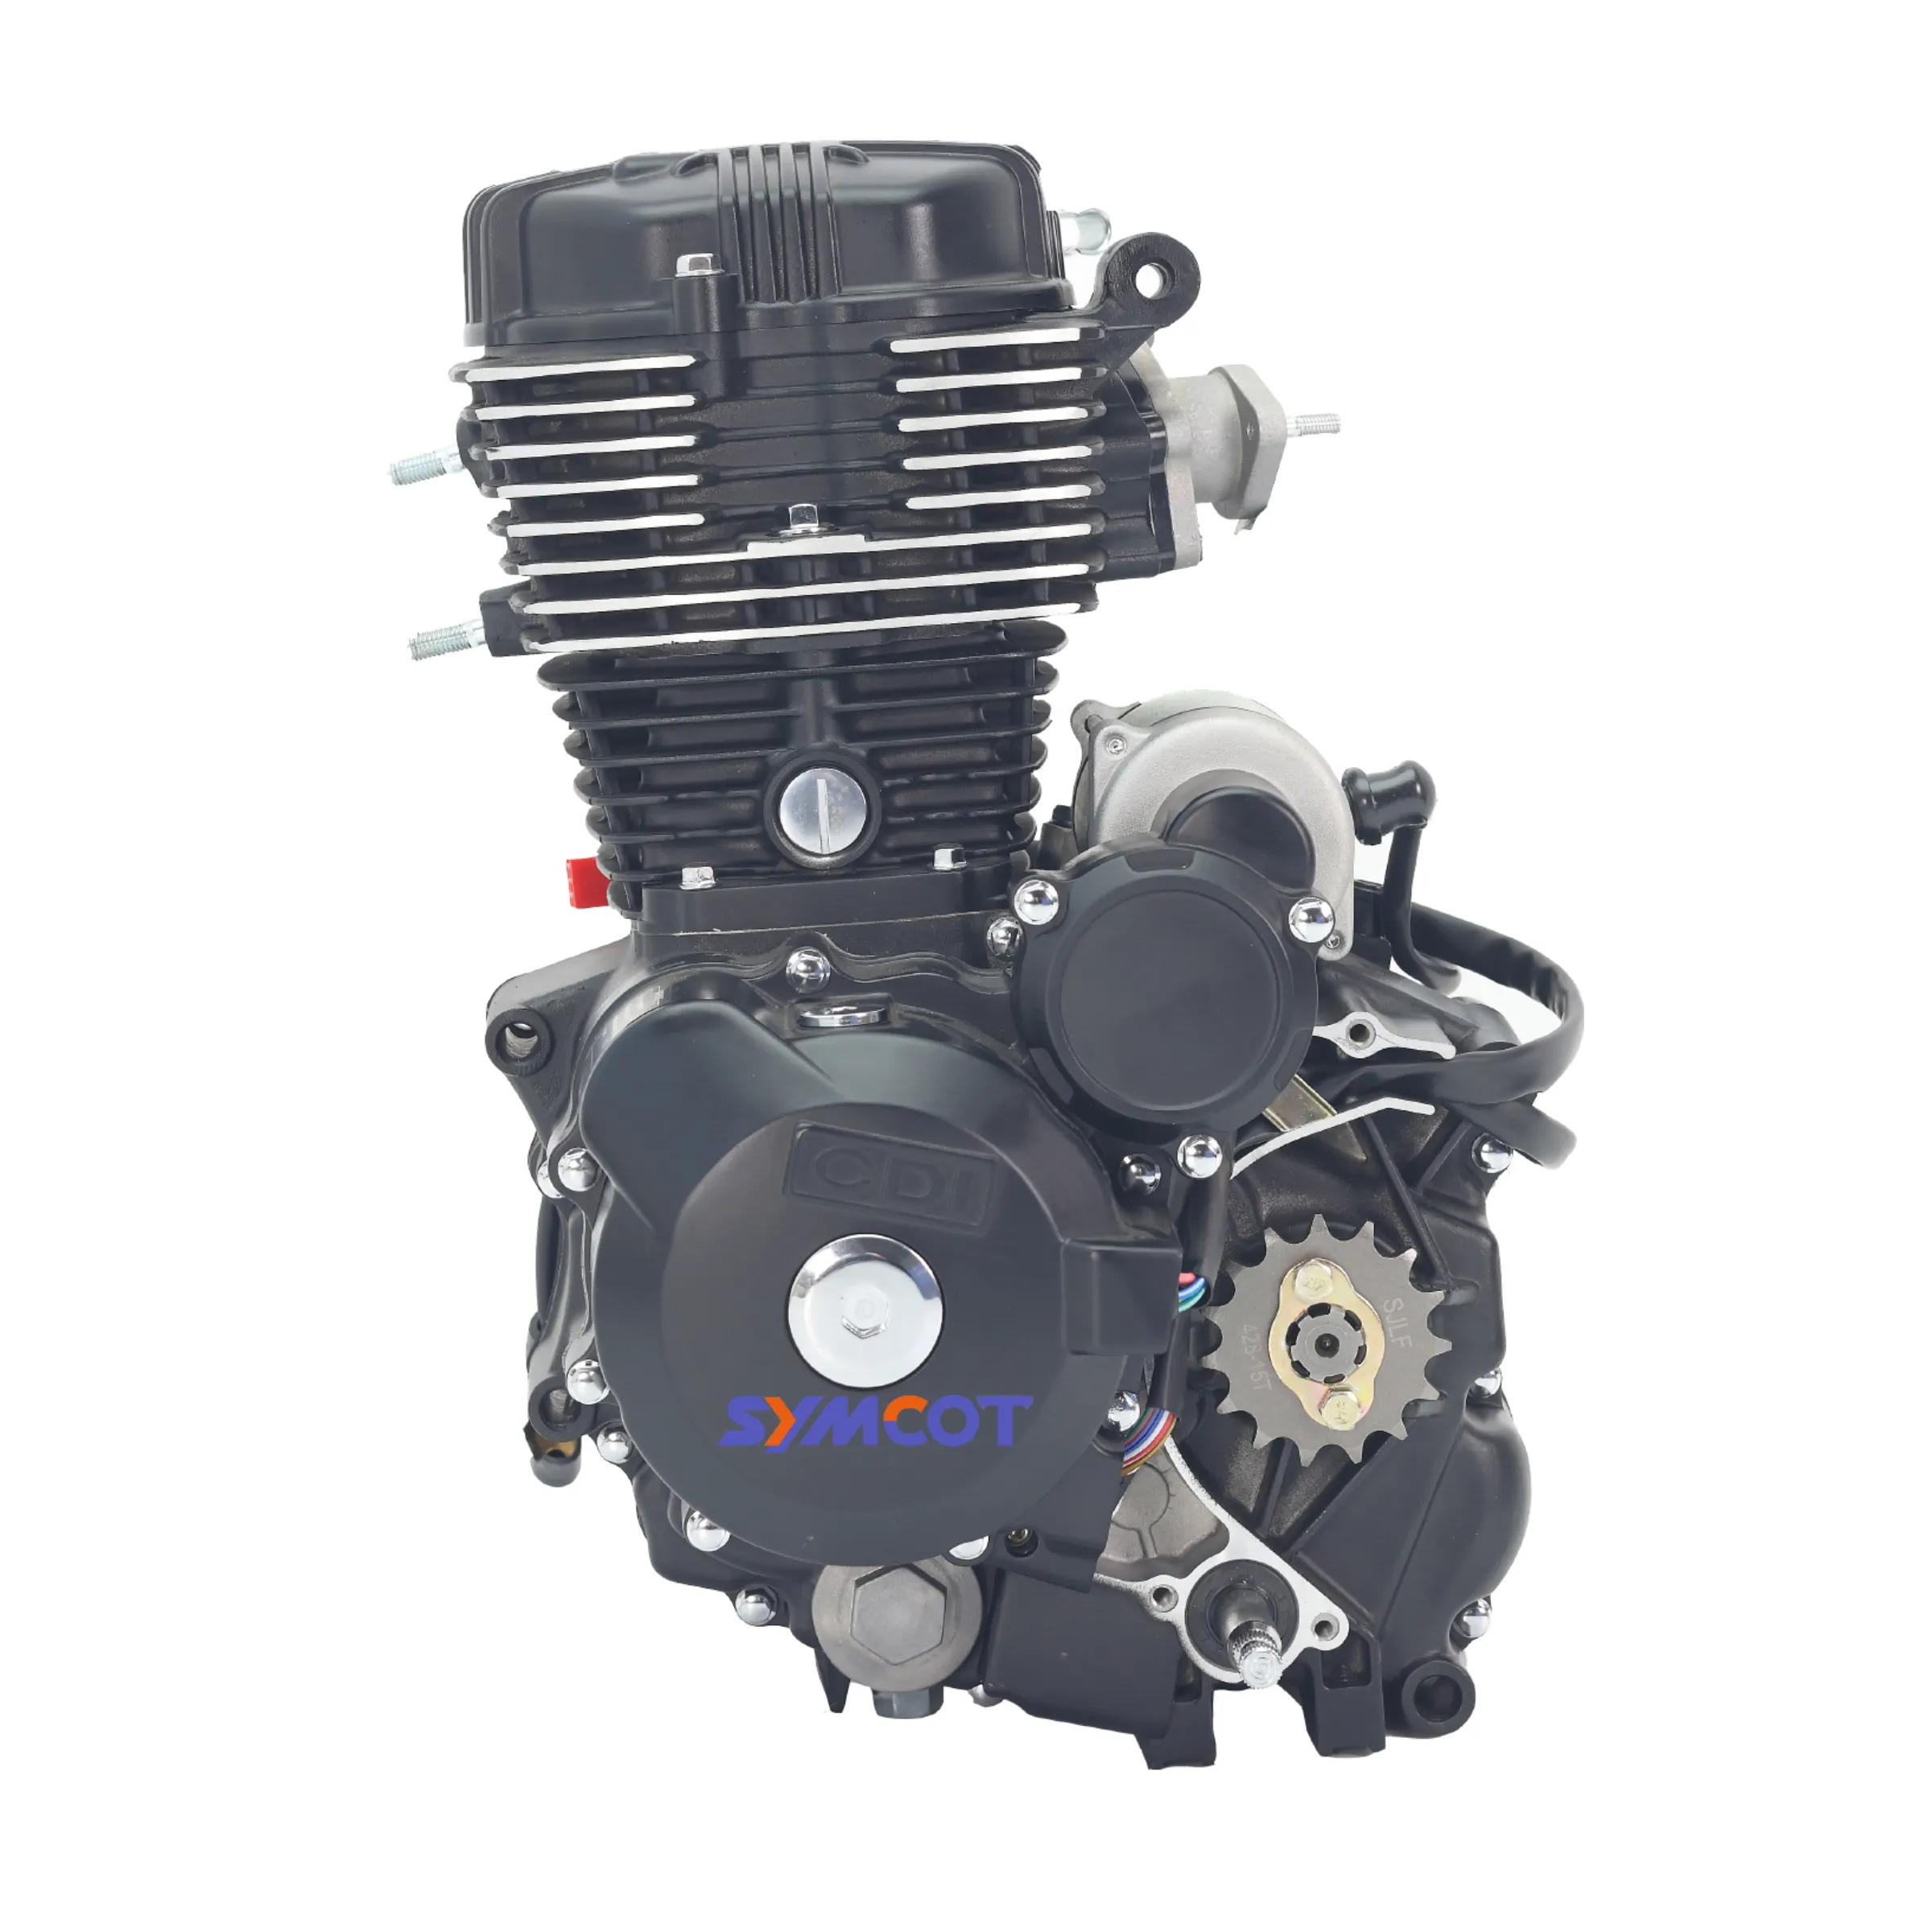 Nuovo gruppo motore moto SYMCOT 125CC 150CC, raffreddato ad aria a 4 tempi, 5 avanti, calcio elettrico, alta qualità pronto per la spedizione